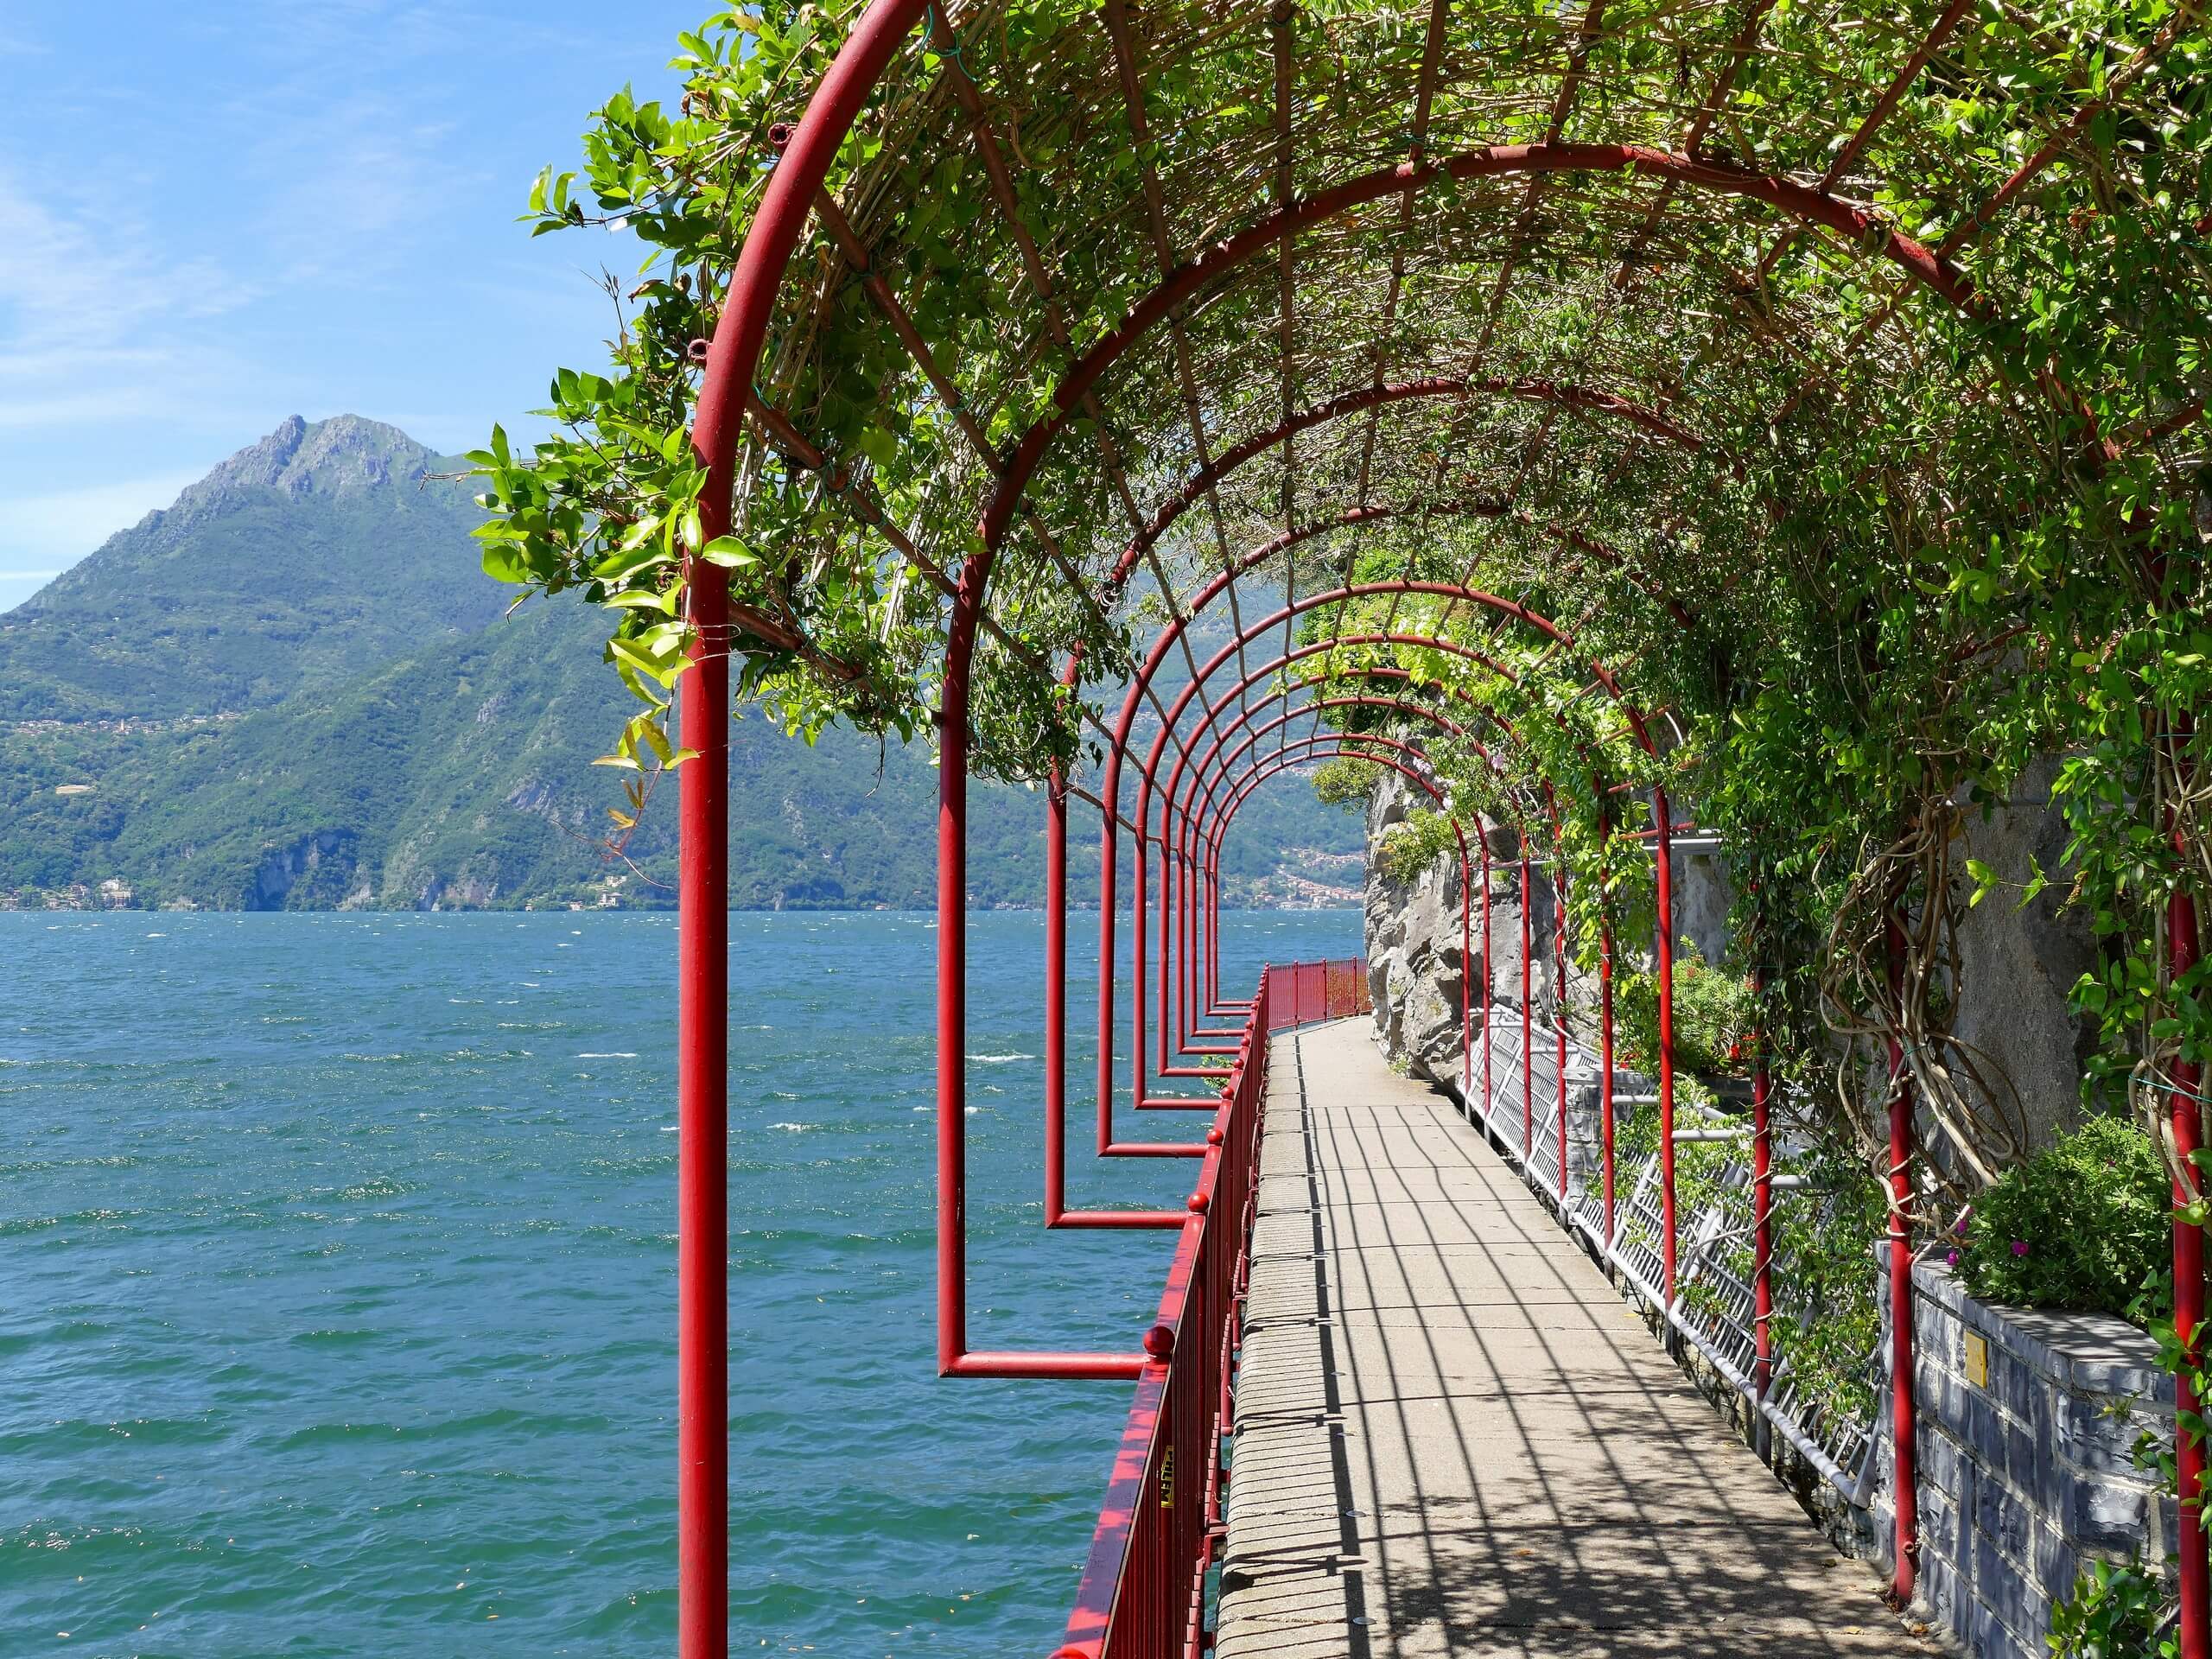 Walking along the promenade of Lake Como shores